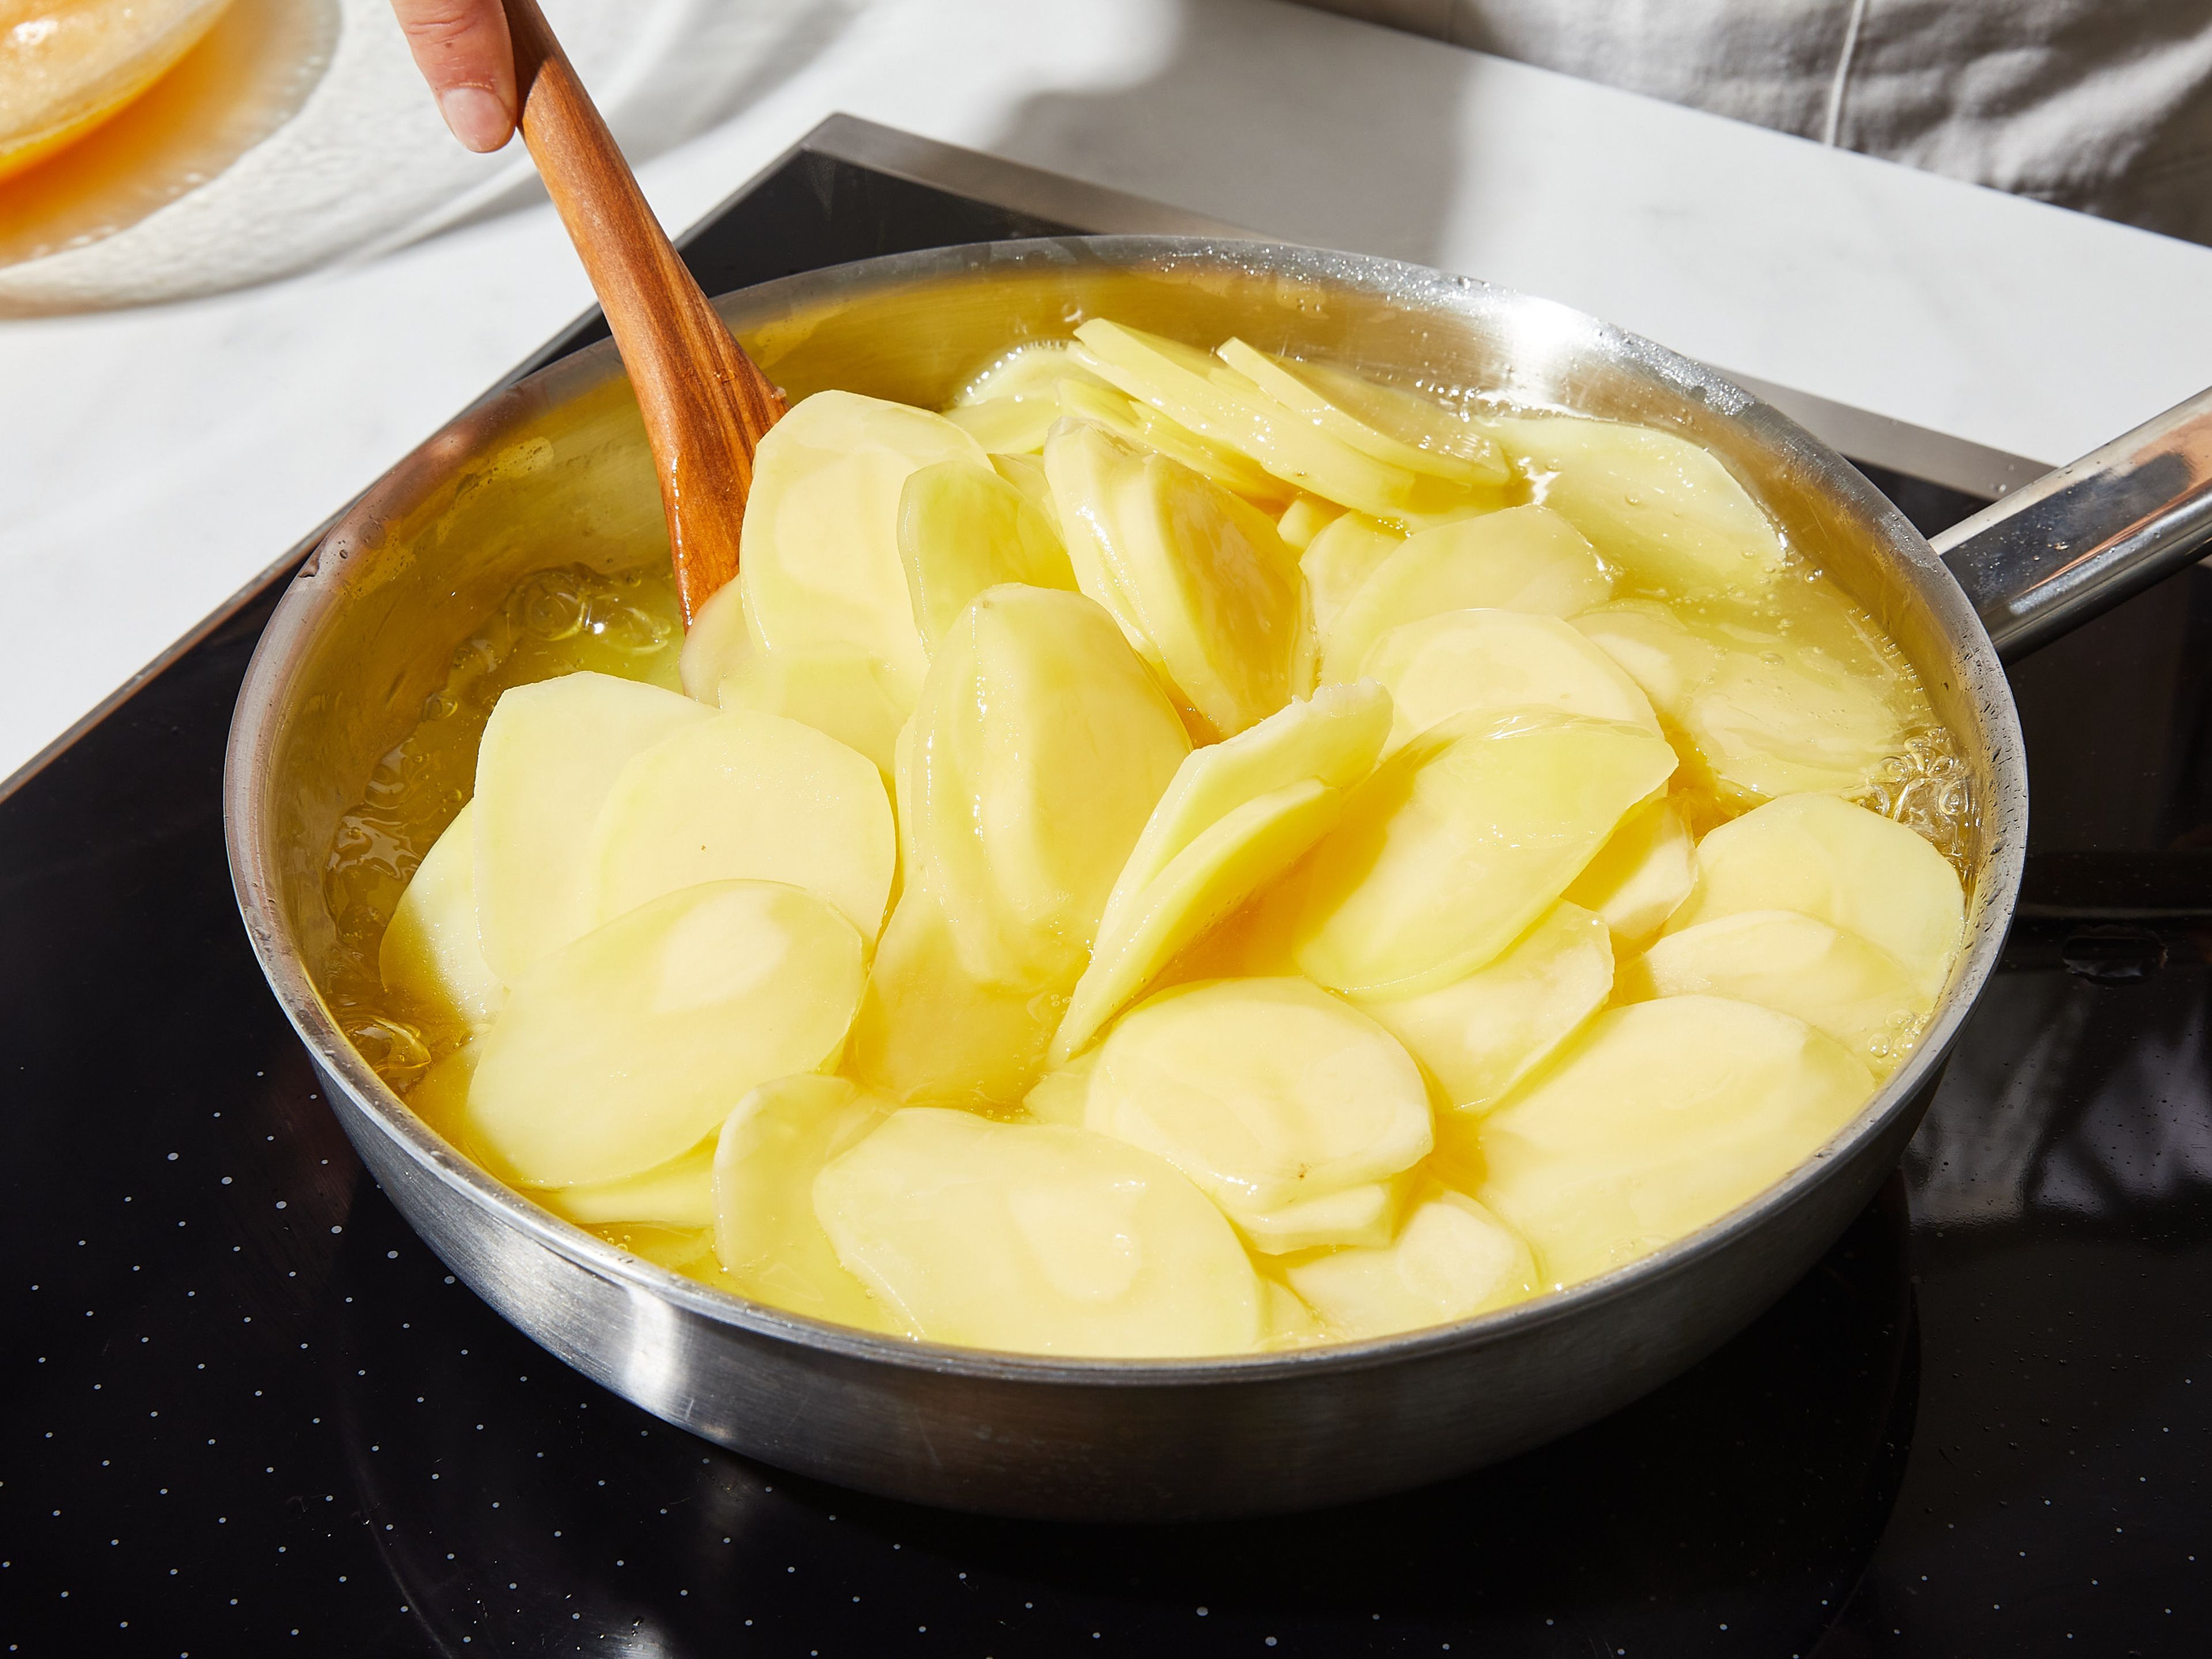 Die Kartoffeln schälen und mit einem Gemüsehobel in dünne Scheiben, ca. 3 mm, schneiden. Das Öl in einer beschichteten Pfanne mittel-hoch erhitzen und die Kartoffelscheiben darin ca. 15 – 20 Min. bei geringer Hitze garen. Eventuell etwas mehr Öl dazugeben, so dass sie fast schwimmen. Die Kartoffeln sollen dabei keine Farbe annehmen.